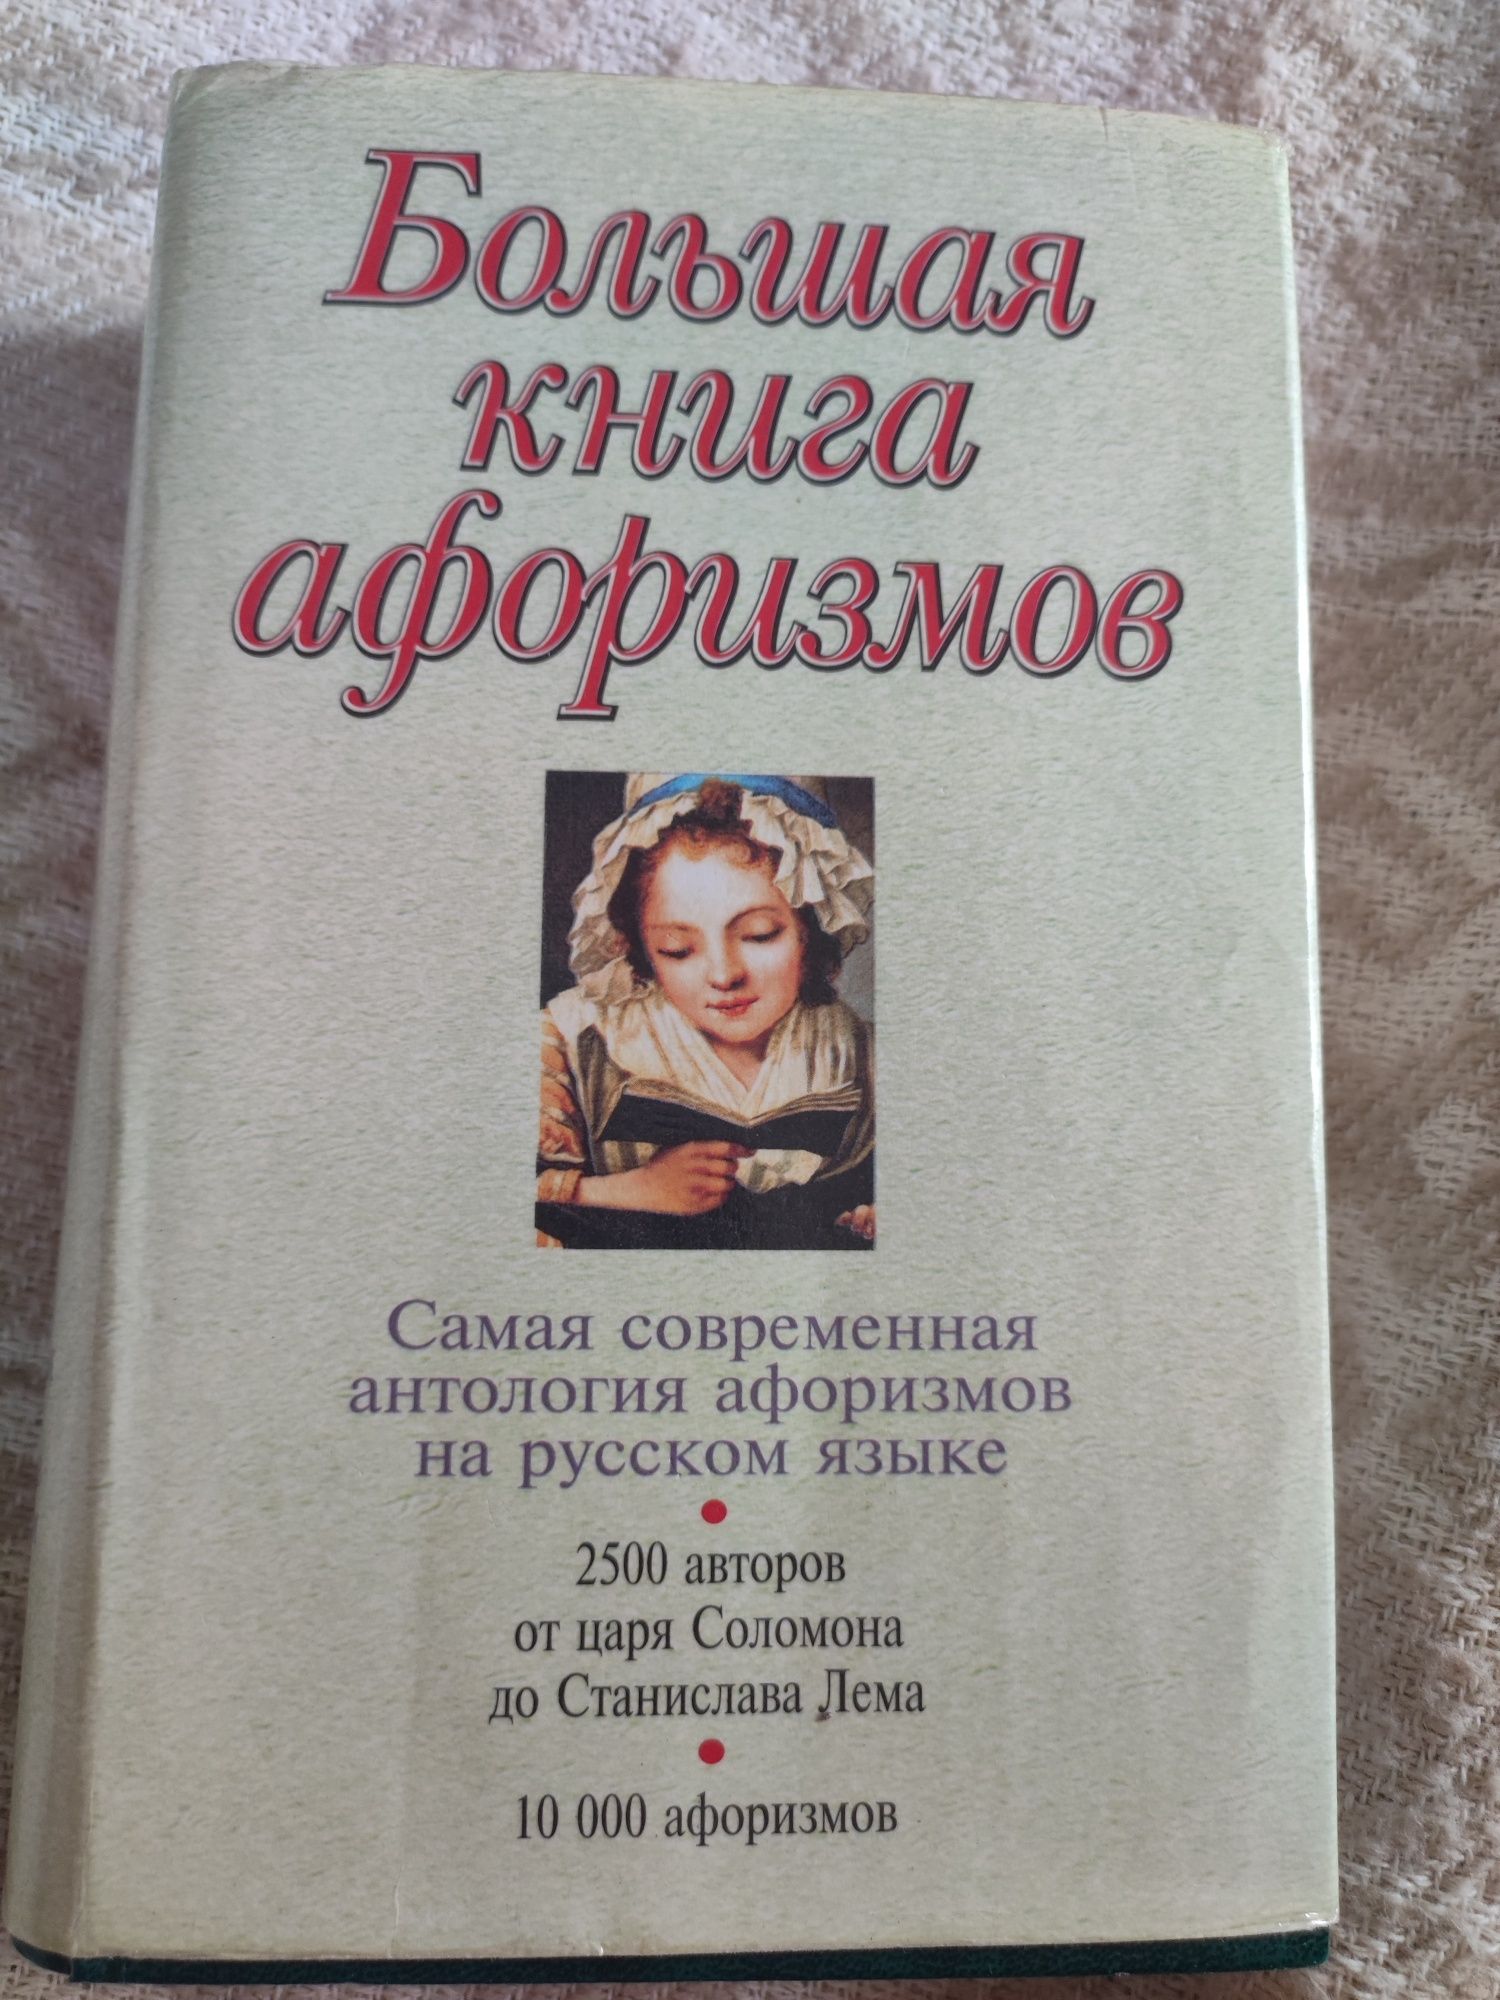 Велика книга афоризмів російською